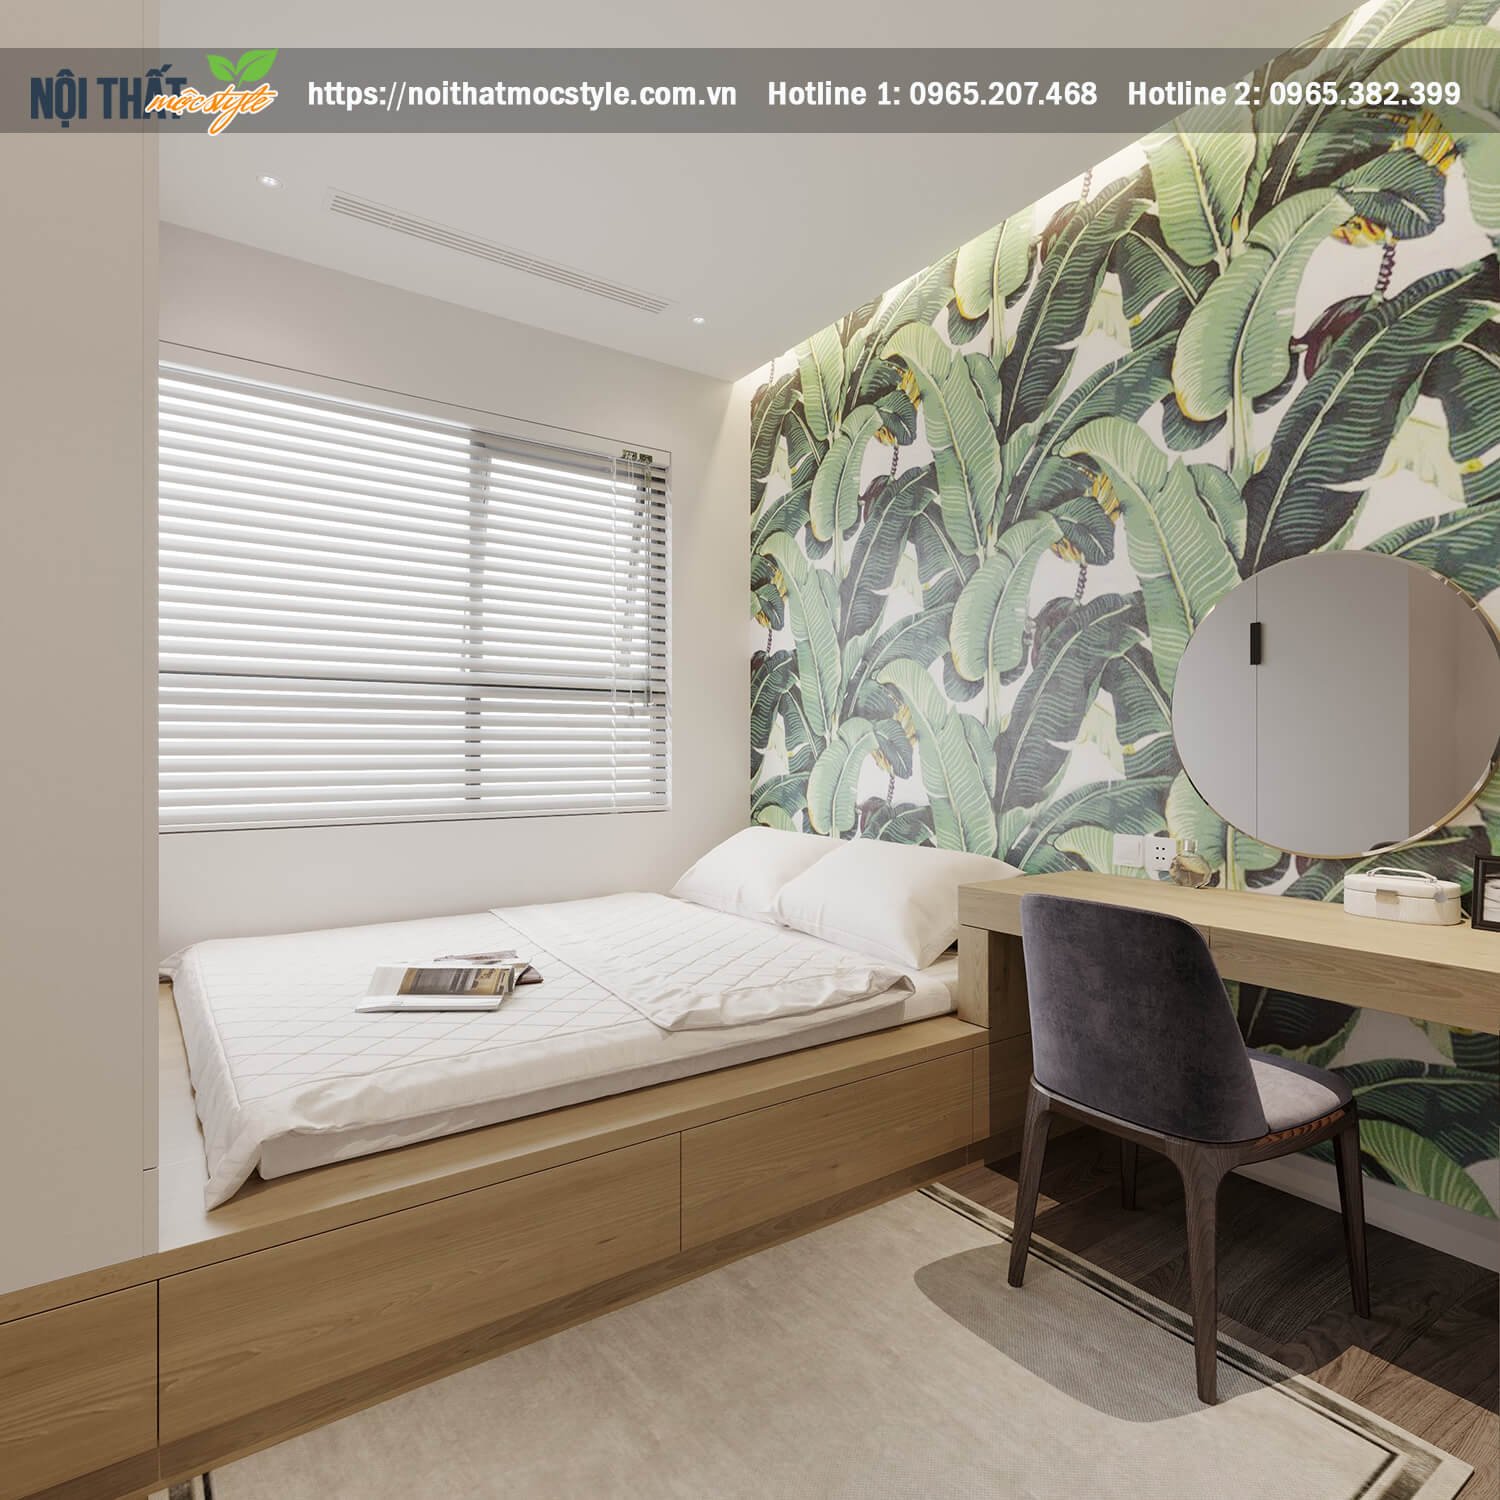 Thiết kế nội thất phòng ngủ đậm chất nhiệt đới-Nội thất Mộc Style